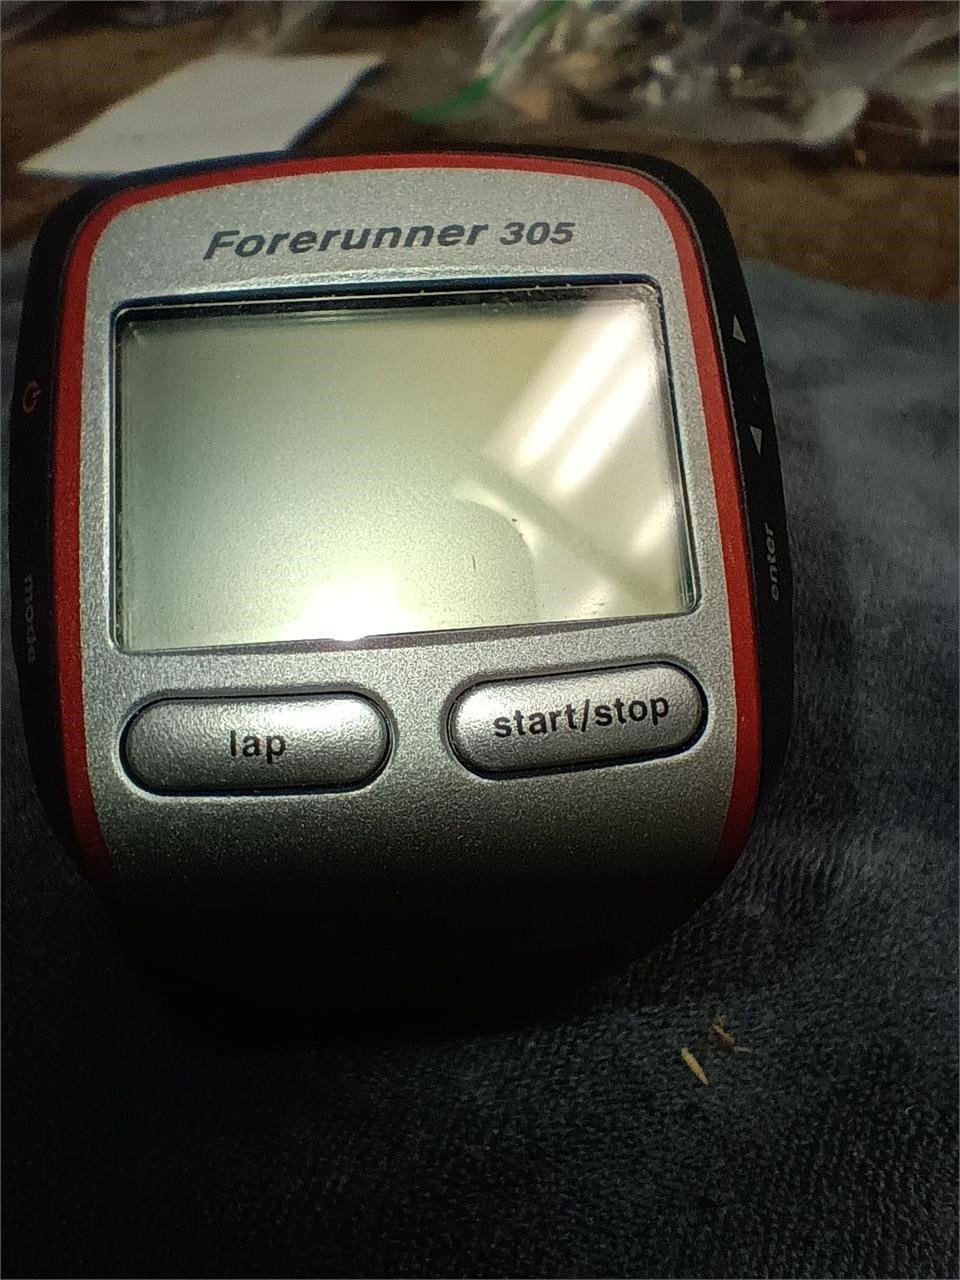 Garmin Forerunner 305 Heart Monitor Running Watch